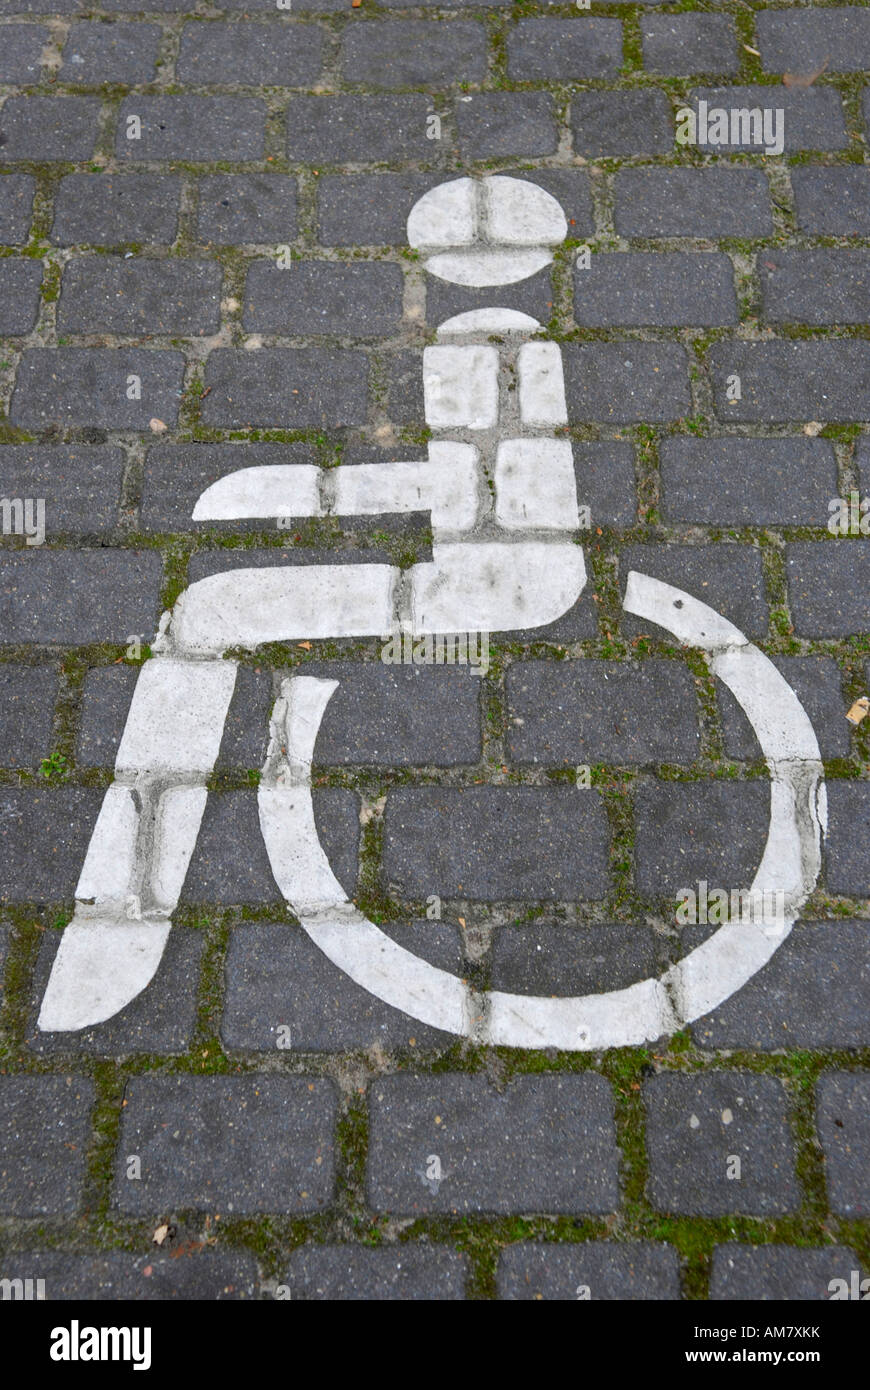 Wheelchair, pictogram Stock Photo